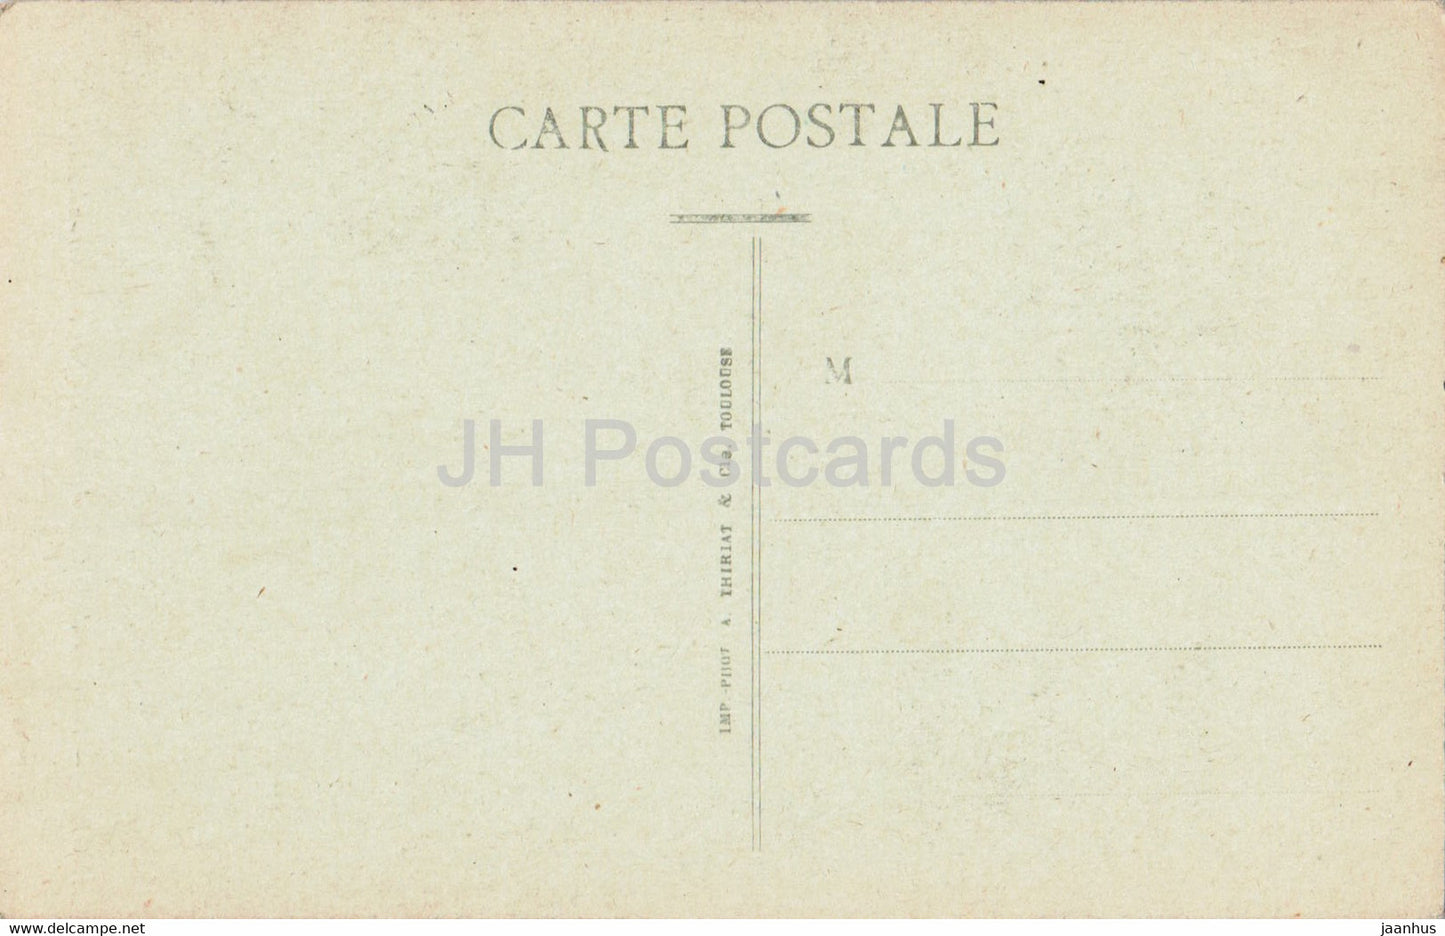 Angers - Intérieur de la Cathédrale - La Nef et le Grand Autel - carte postale ancienne - France - inutilisée